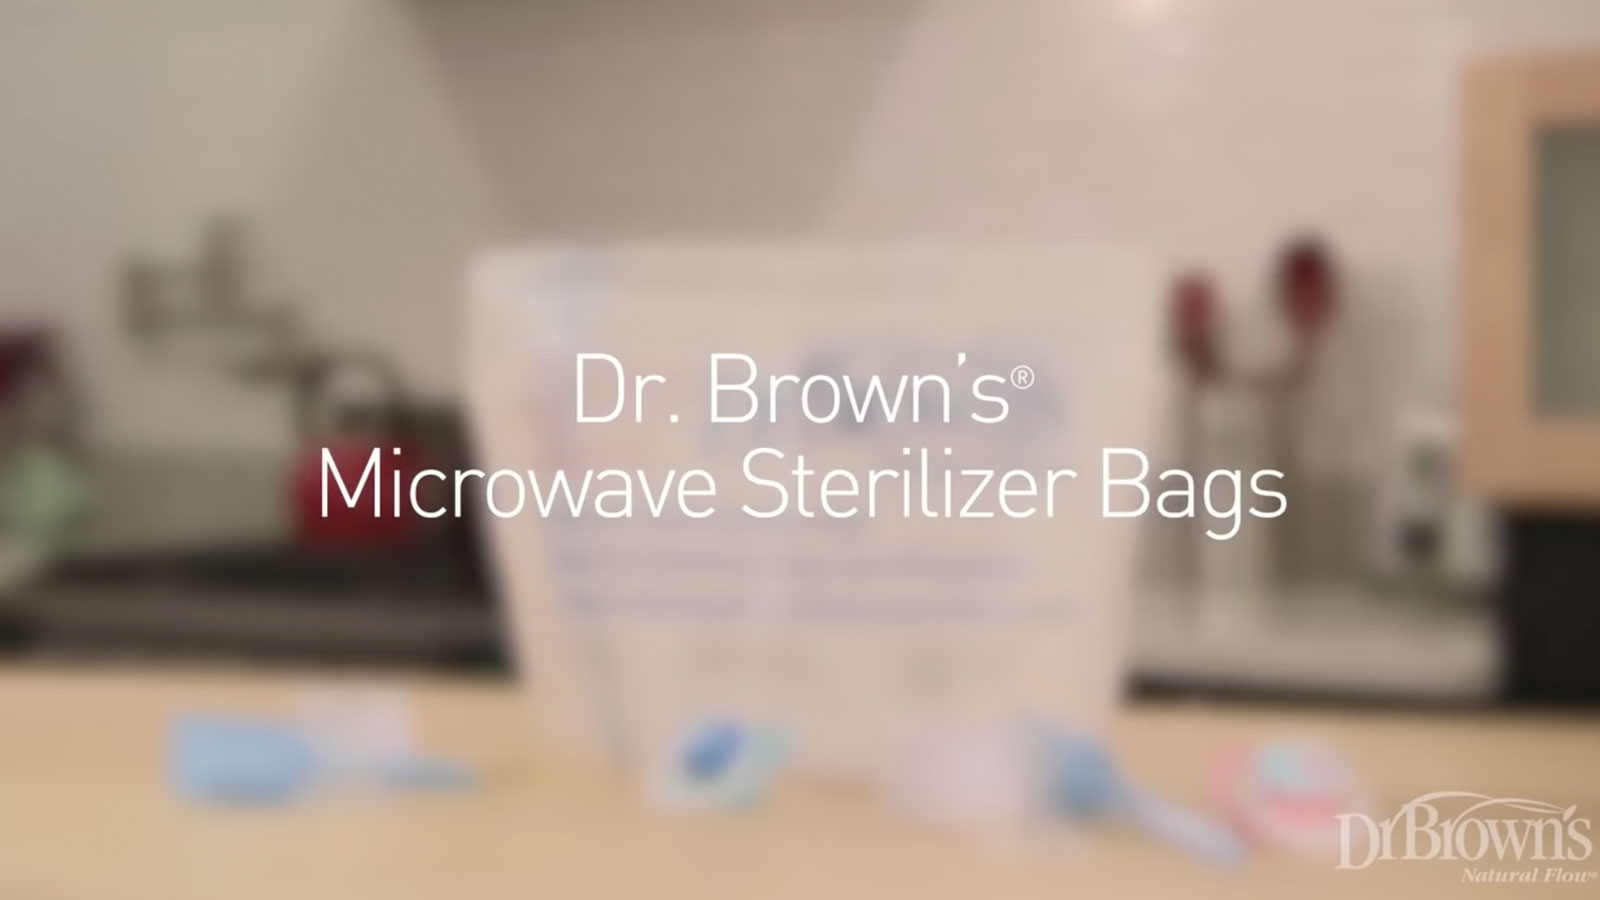 16Pcs Microwave Sterilizer Bags Zipper Closure Reusable Steam Bags